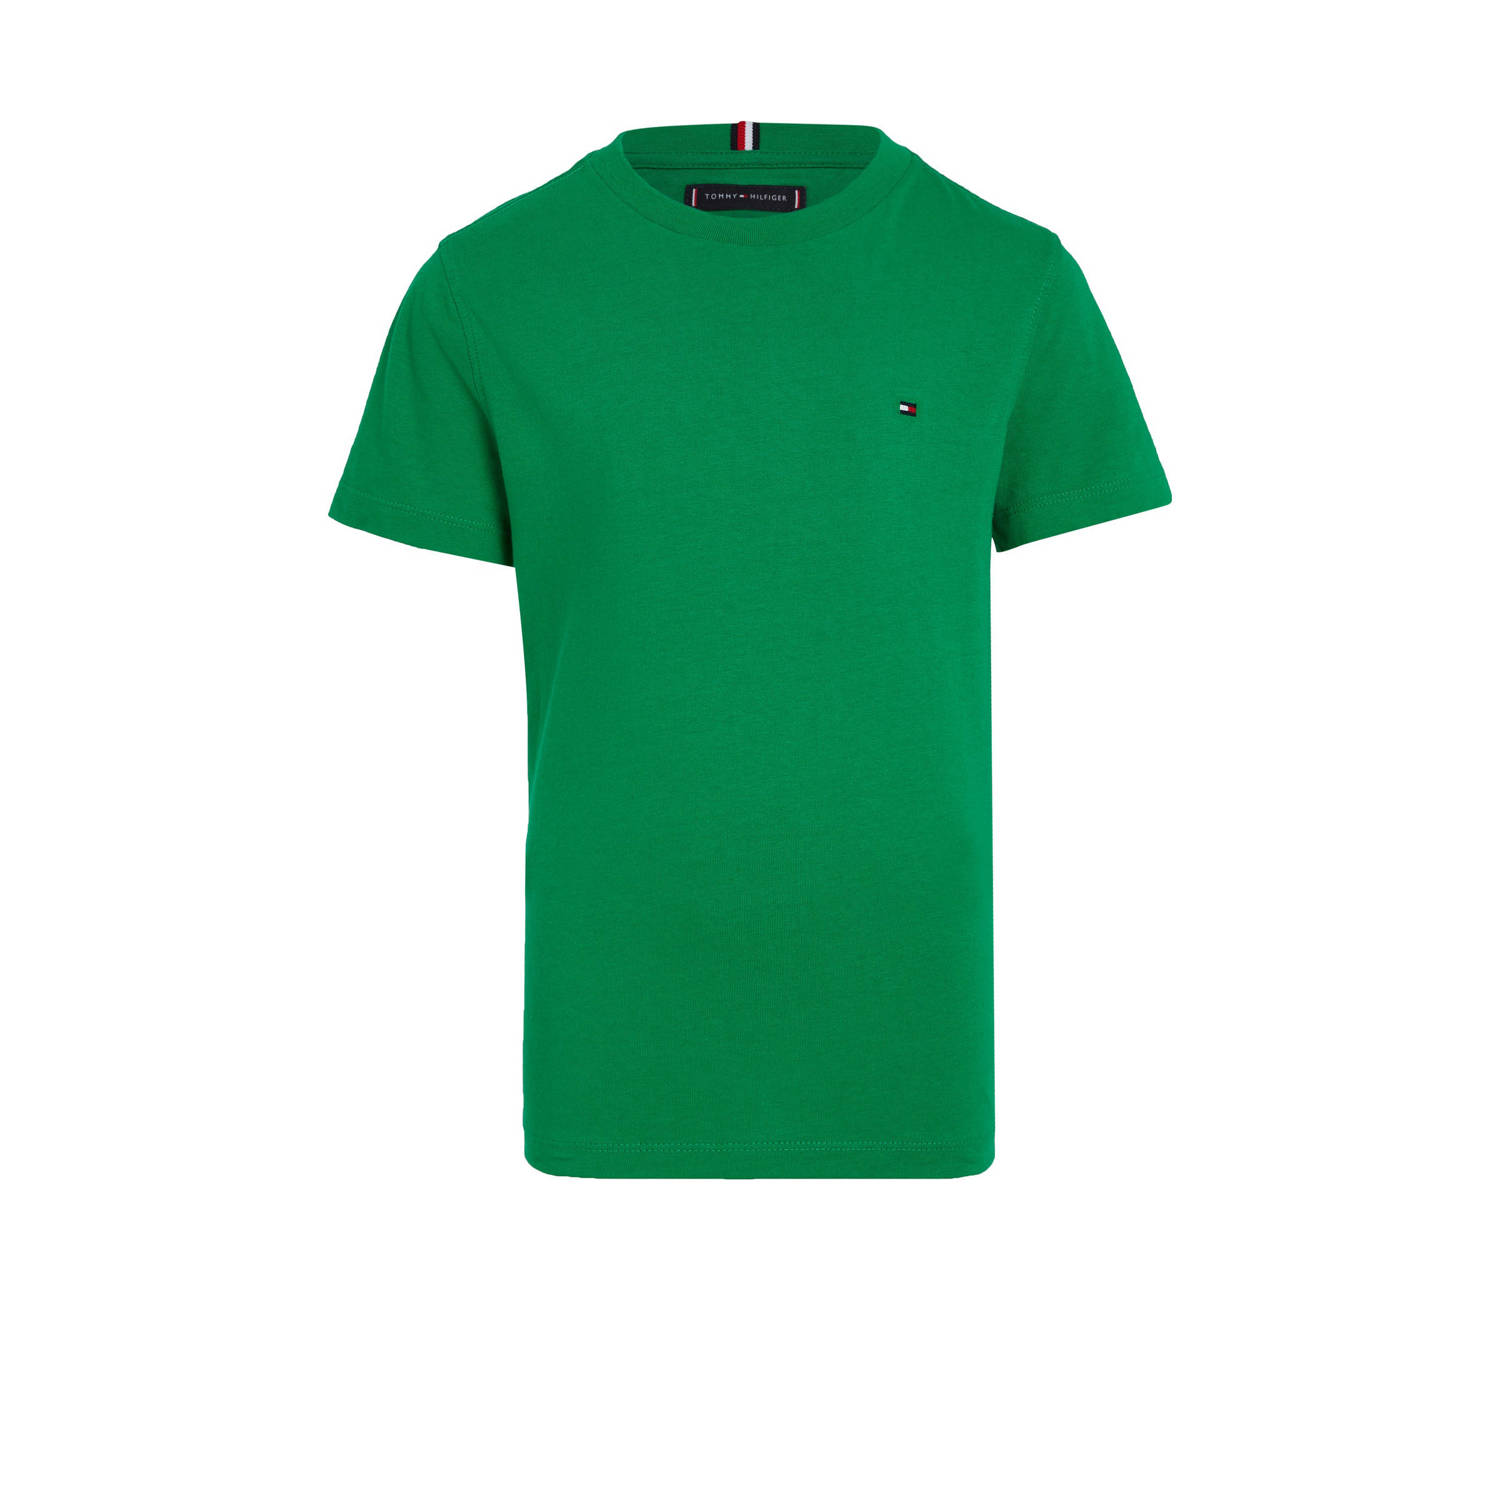 Tommy Hilfiger T-shirt groen